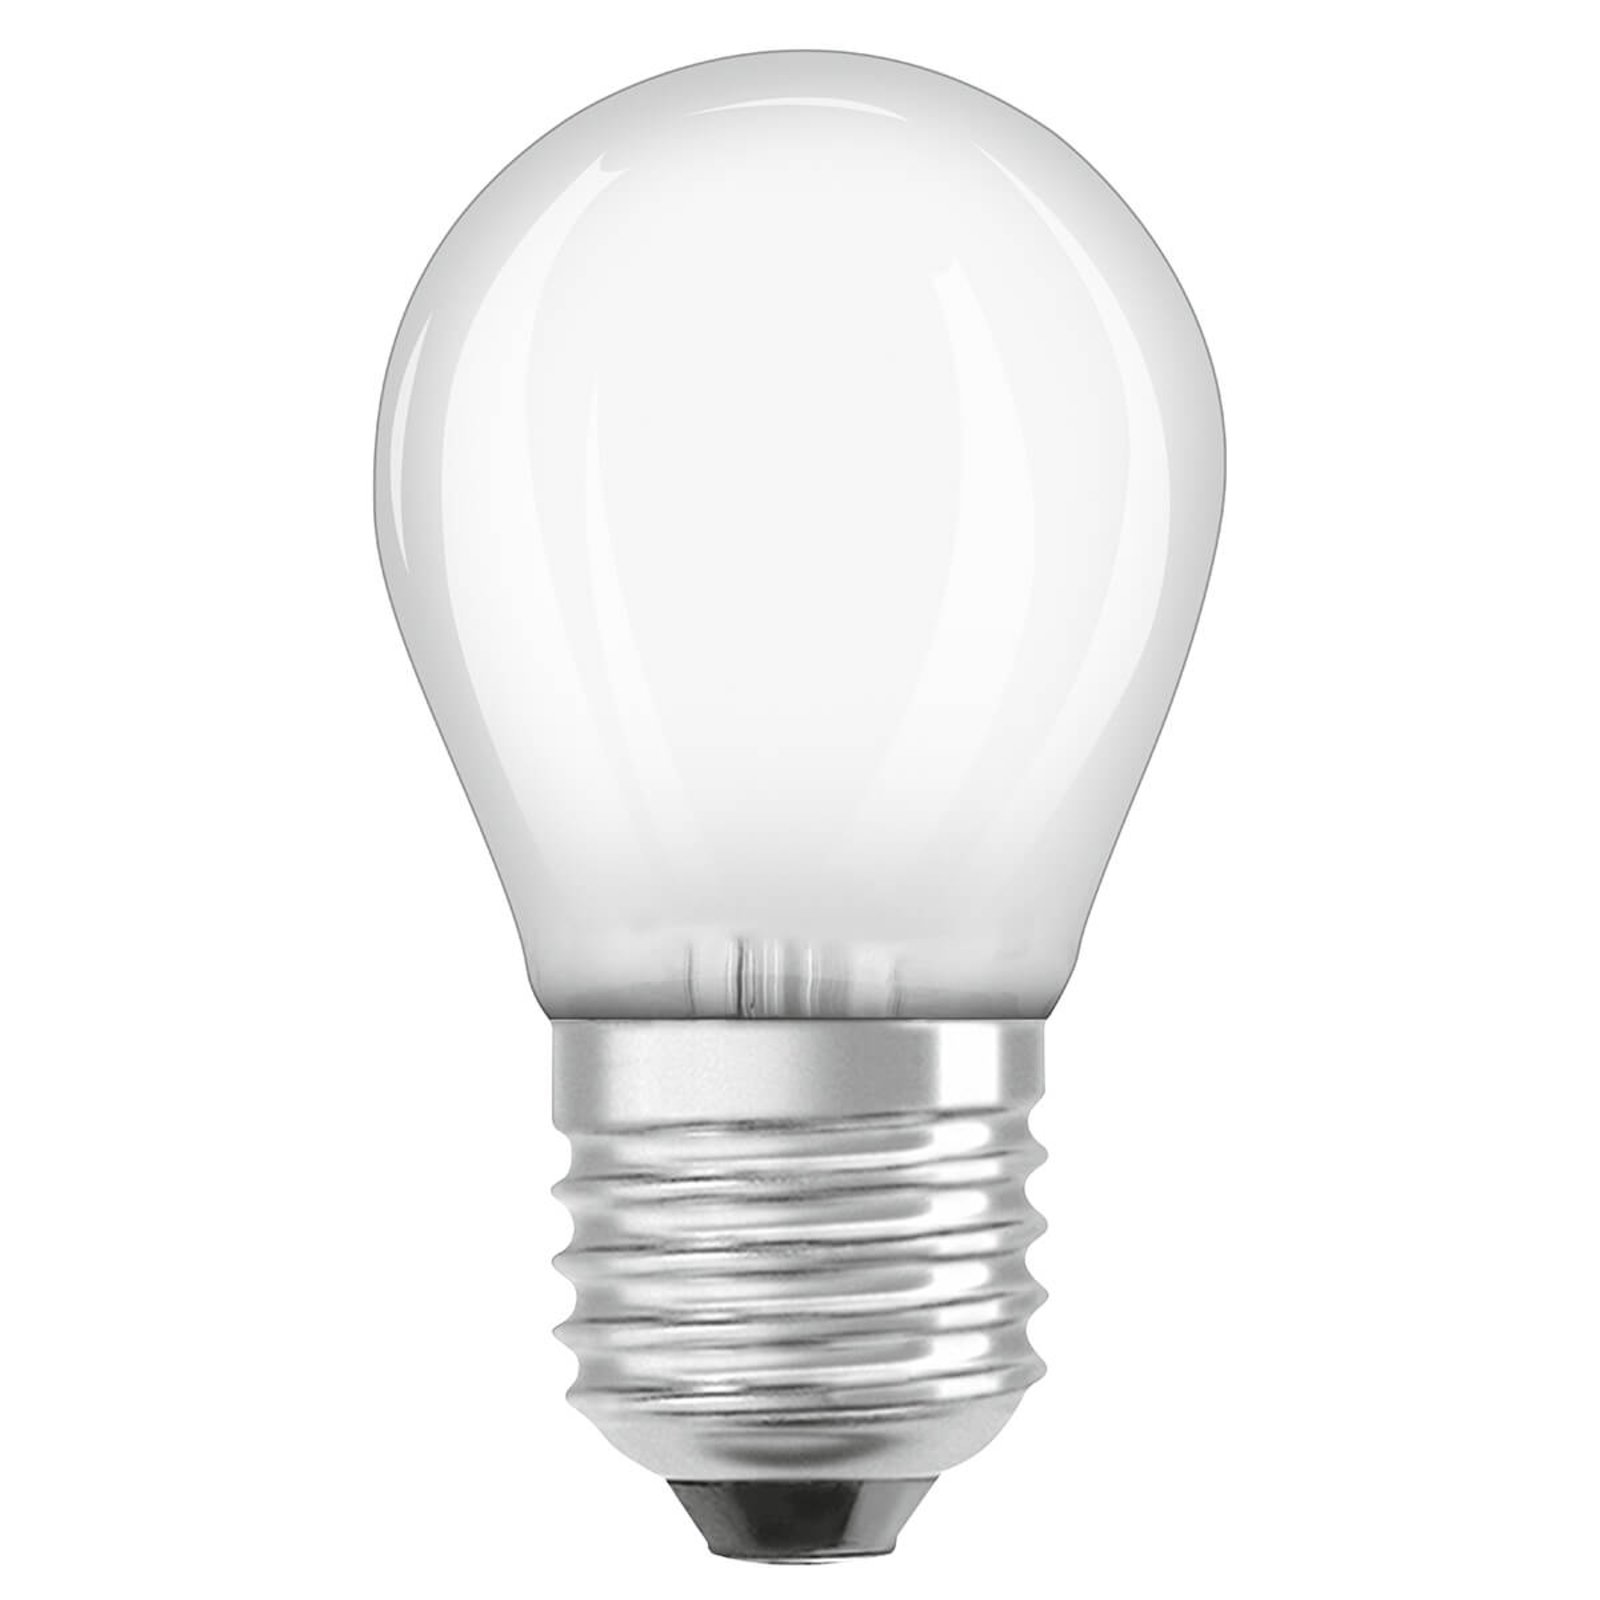 OSRAM LED lamp E27 4.8W 827 dimmerdatav